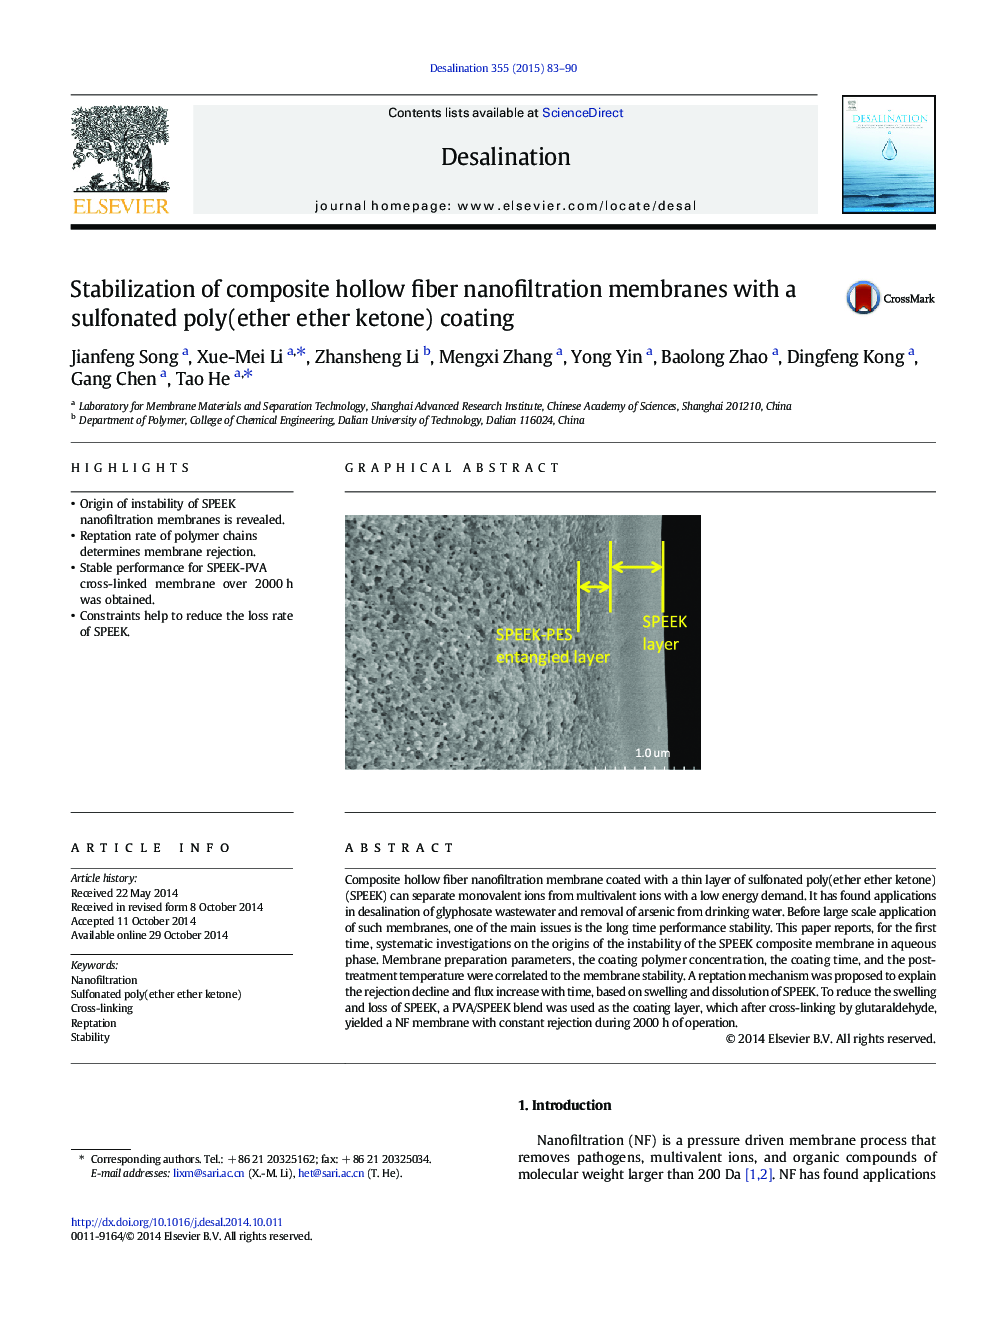 تثبیت غشاهای نانوفیلتراسیون فیبر توخالی کامپوزیتی با پوشش سولفونیک پت (اتر اتر کتون) 